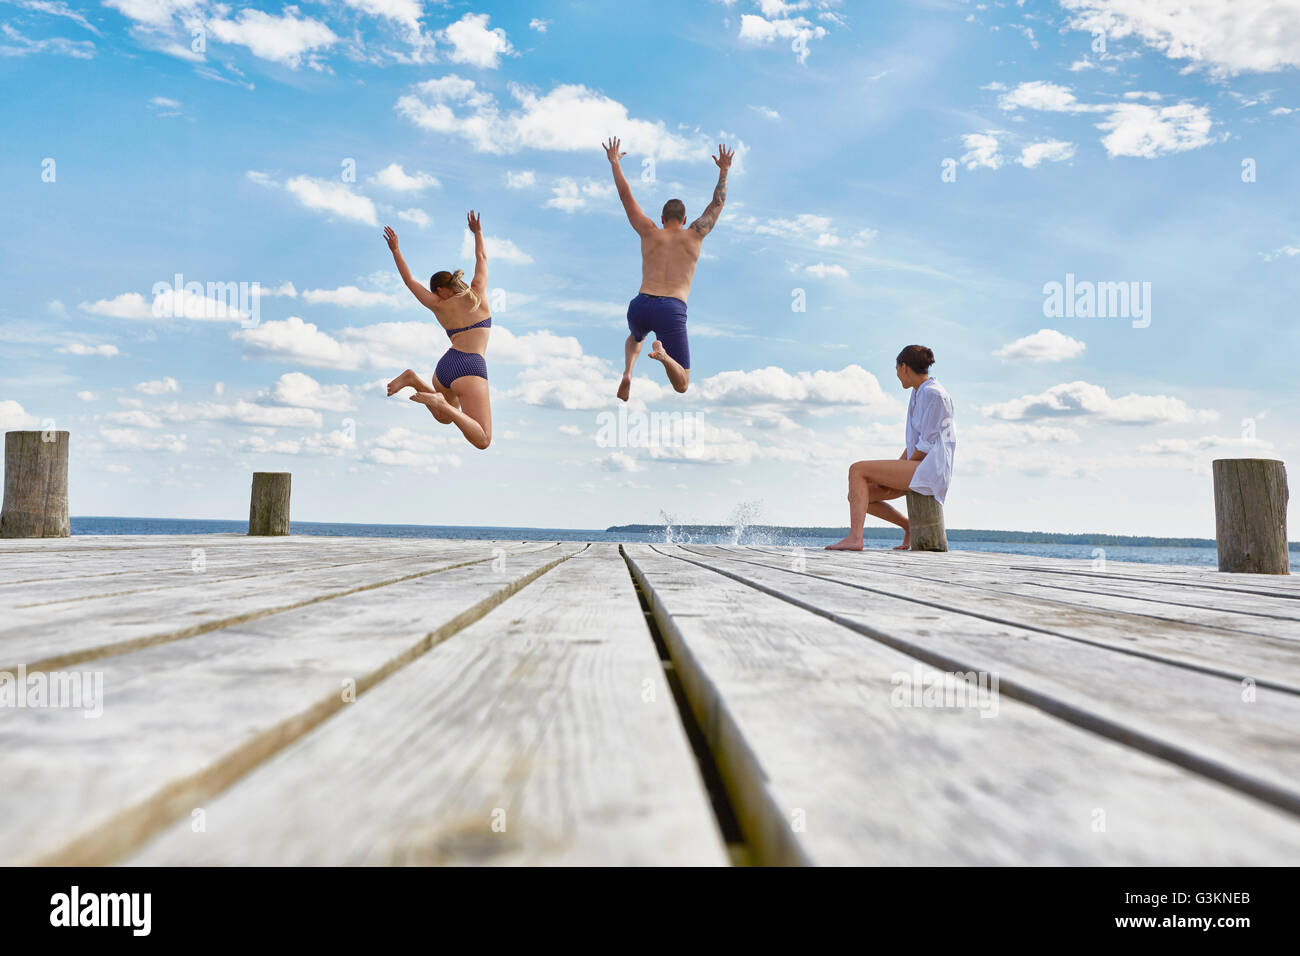 Giovane donna seduta sul post sul molo in legno, guardare gli amici che saltano in mare Foto Stock